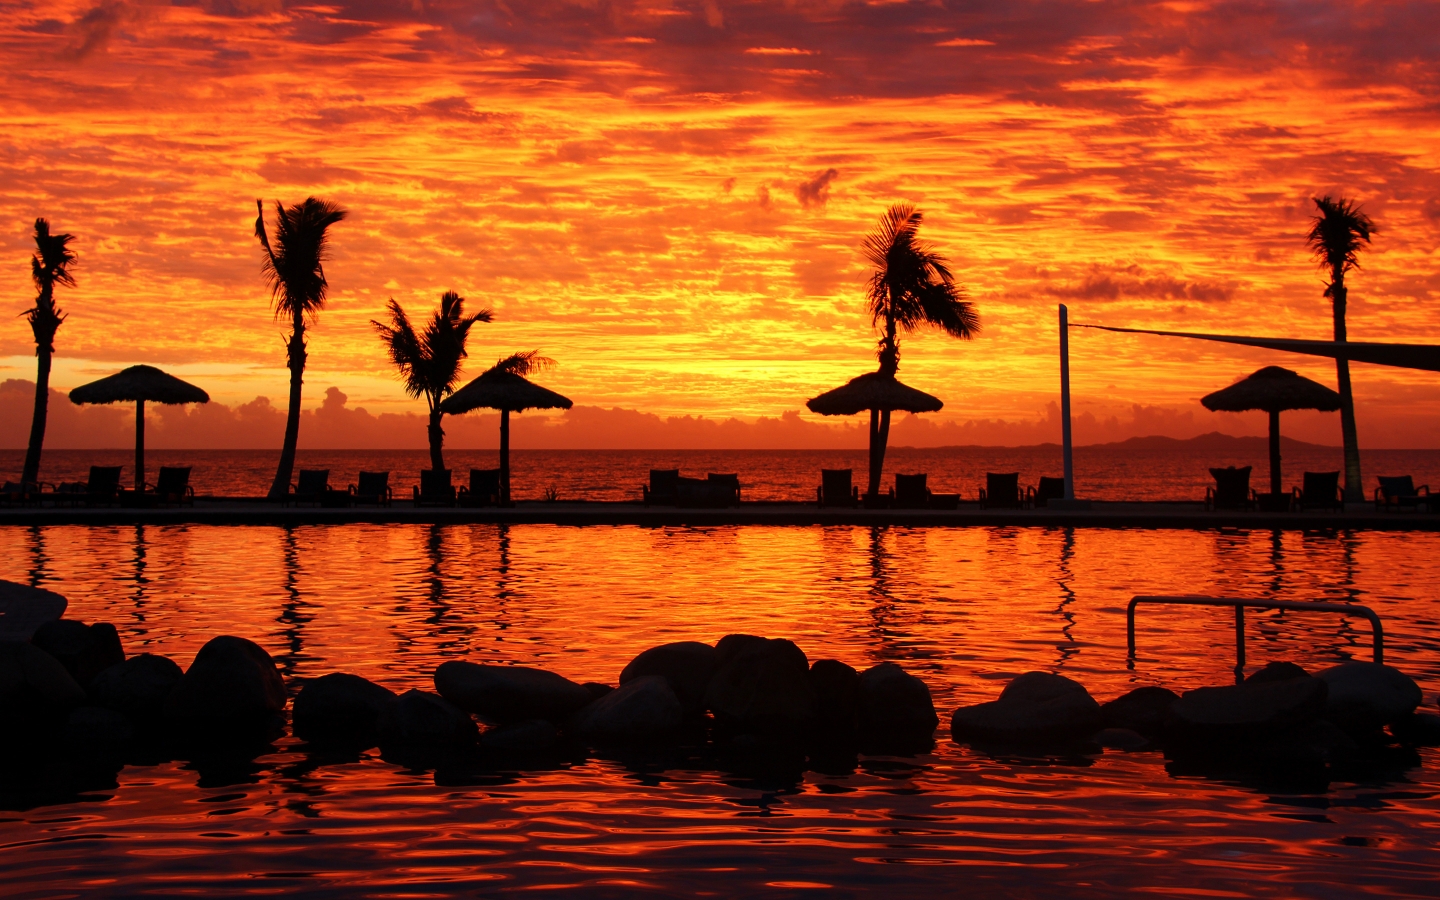 Fijian Sunset for 1440 x 900 widescreen resolution